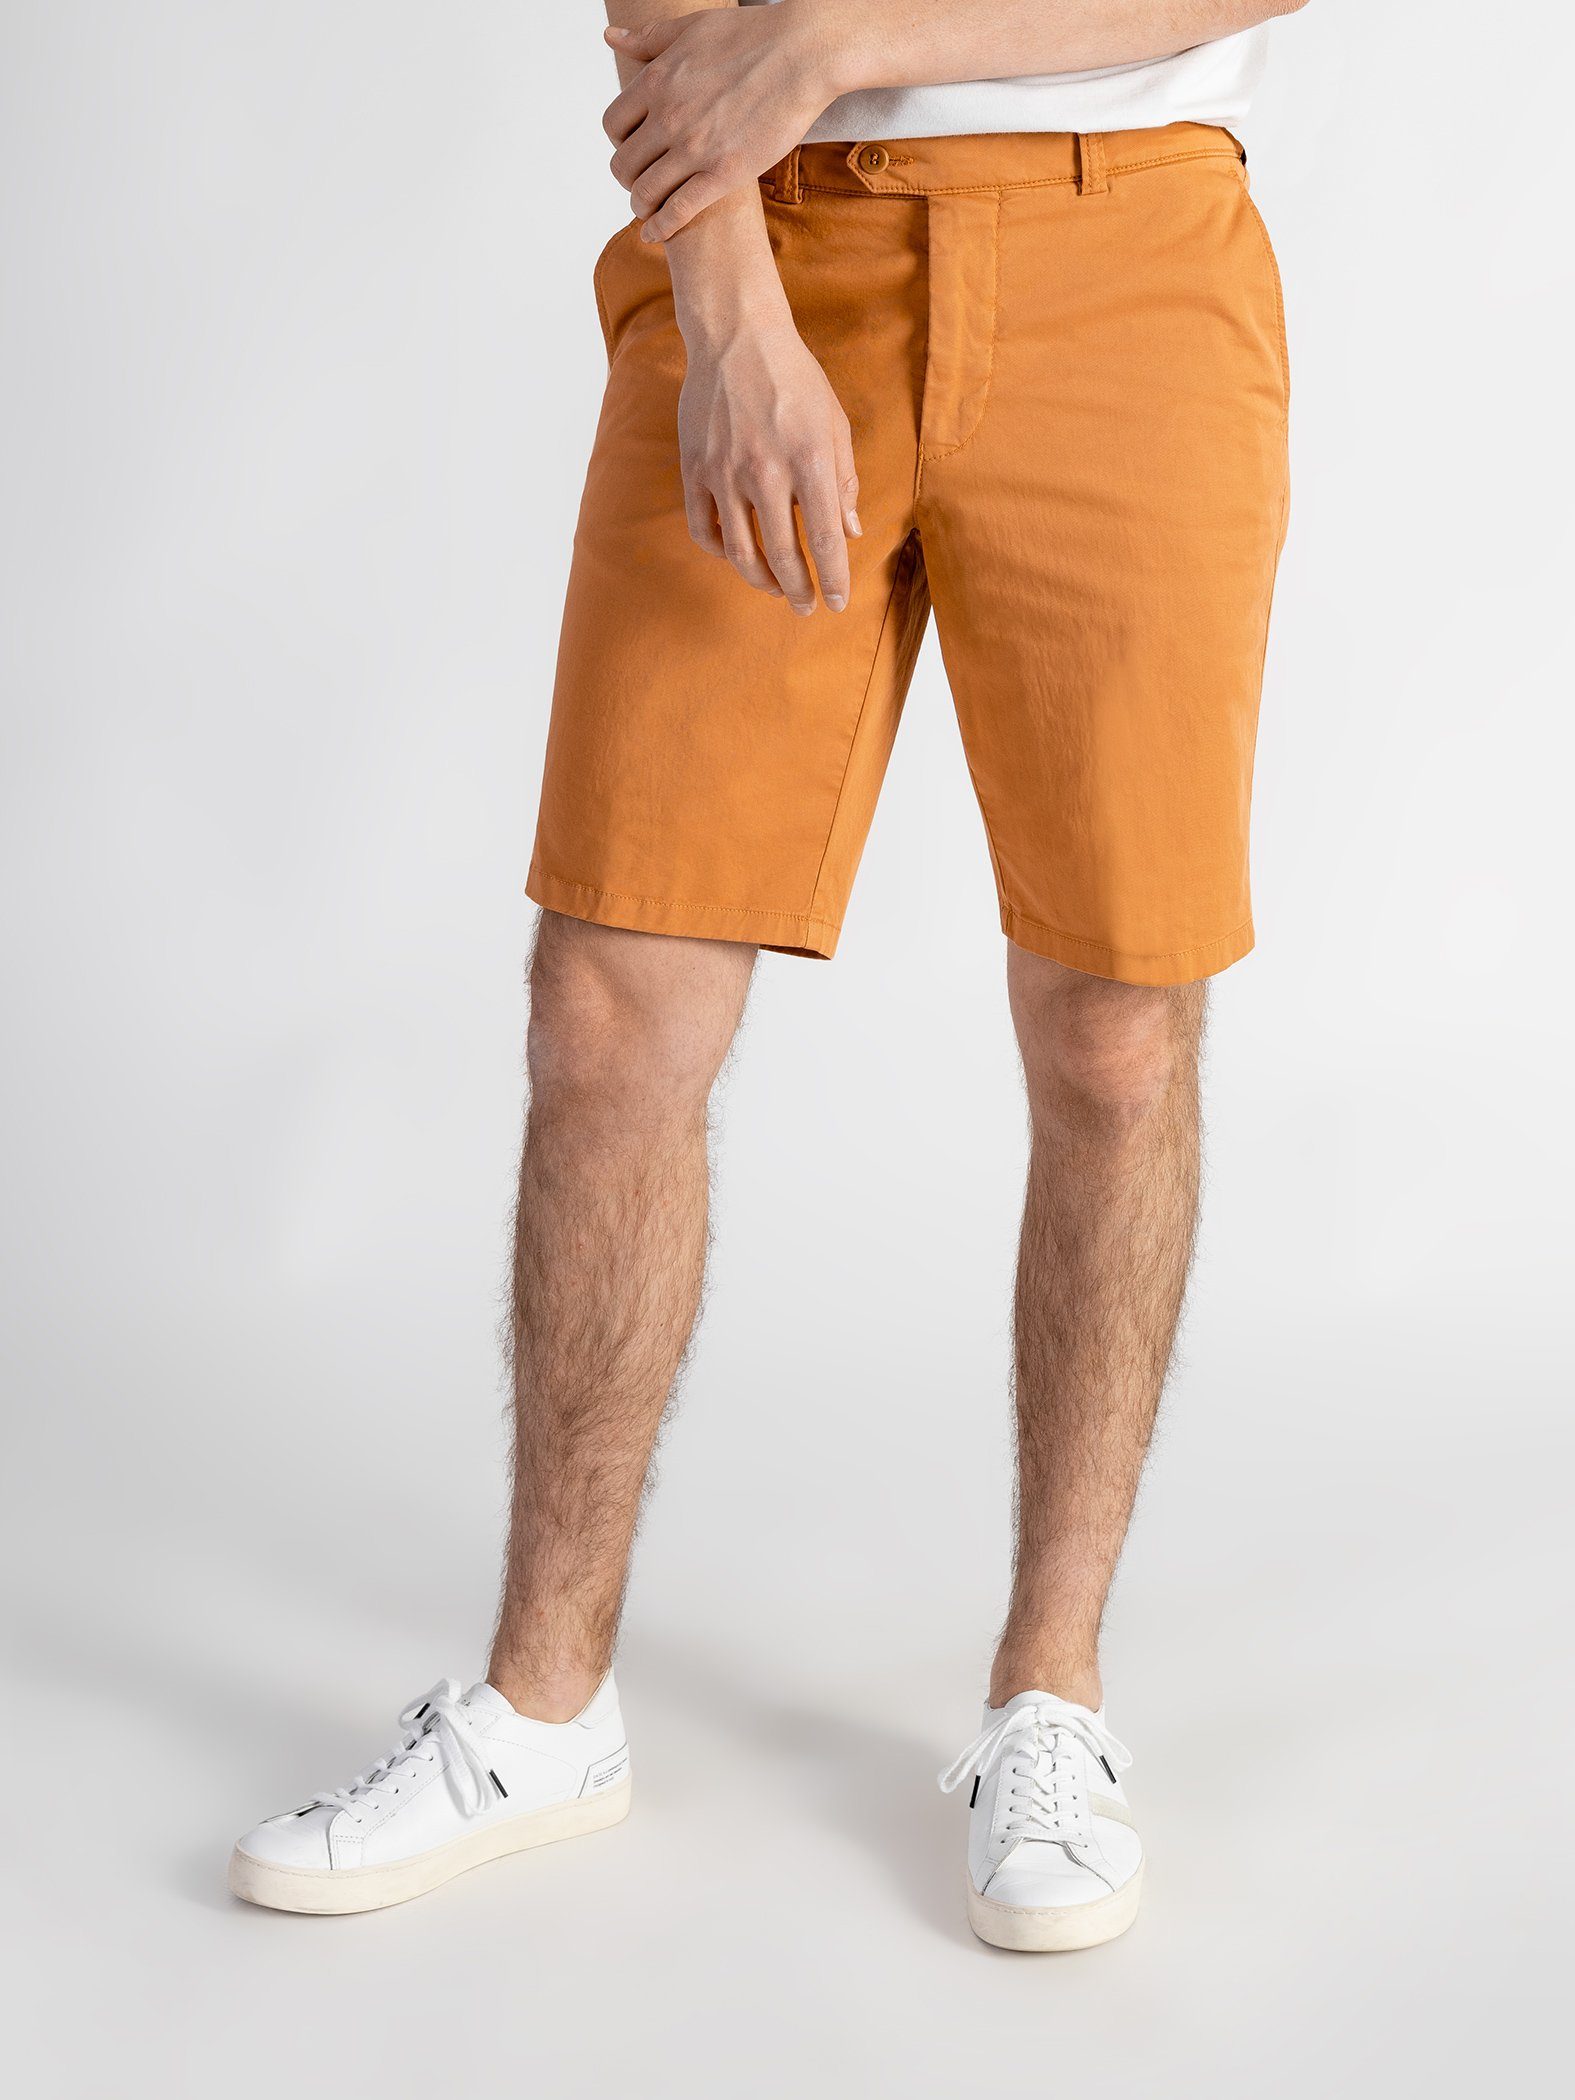 TwoMates Shorts Shorts mit elastischem Bund, Farbauswahl, GOTS-zertifiziert Orange